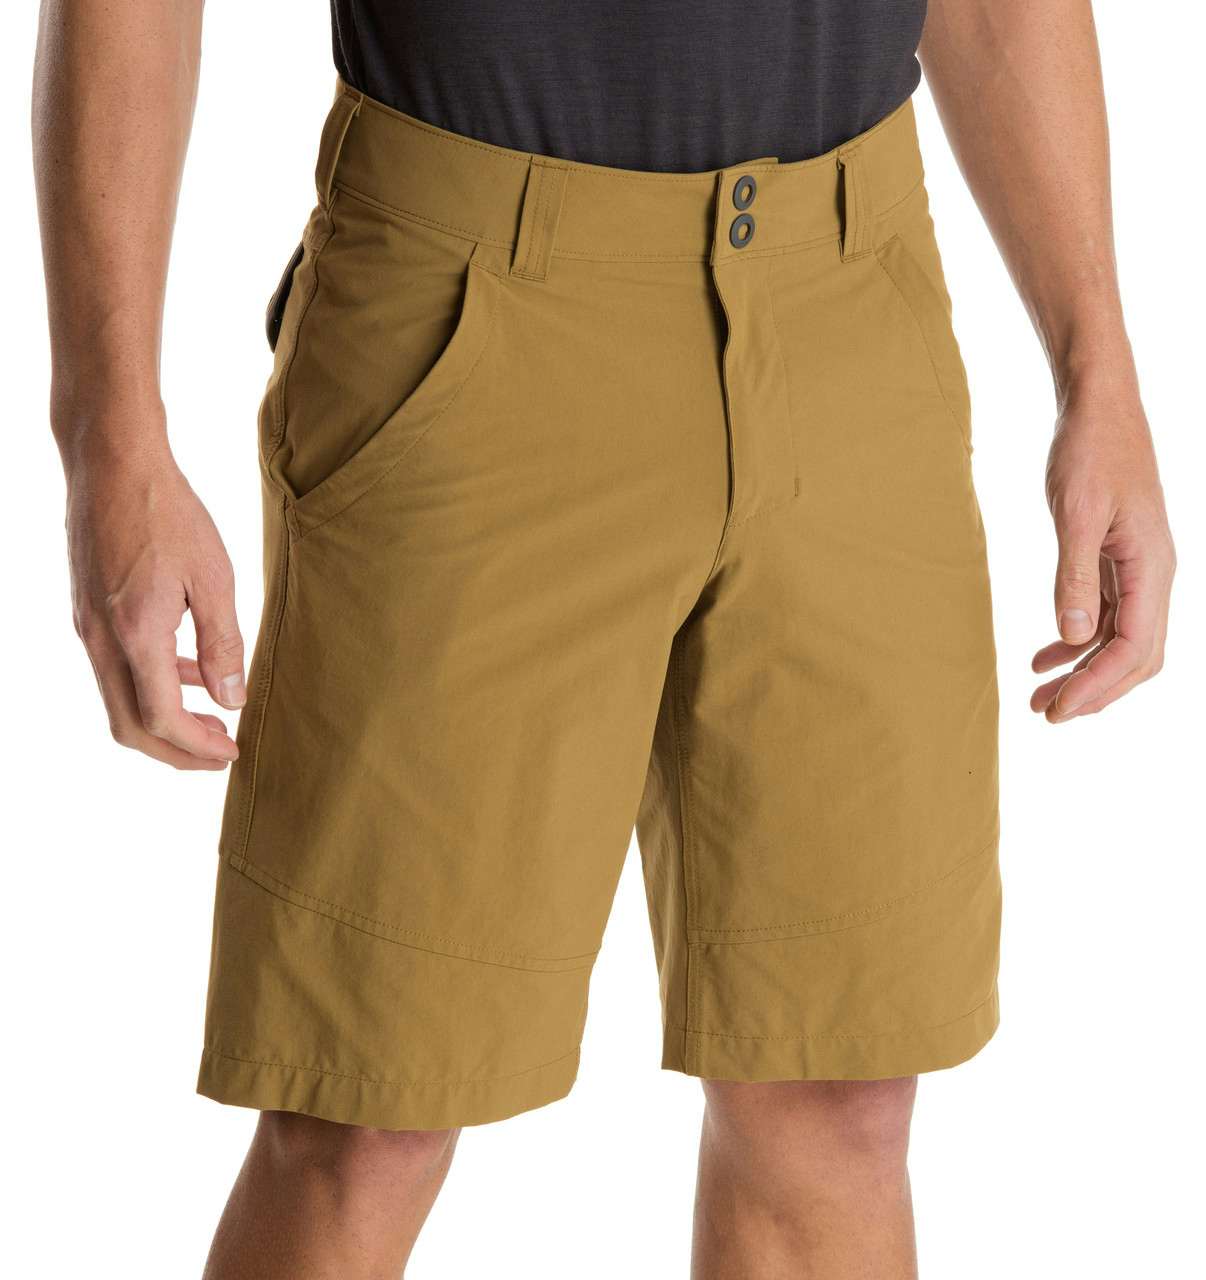 Crinkum Shorts Cadet